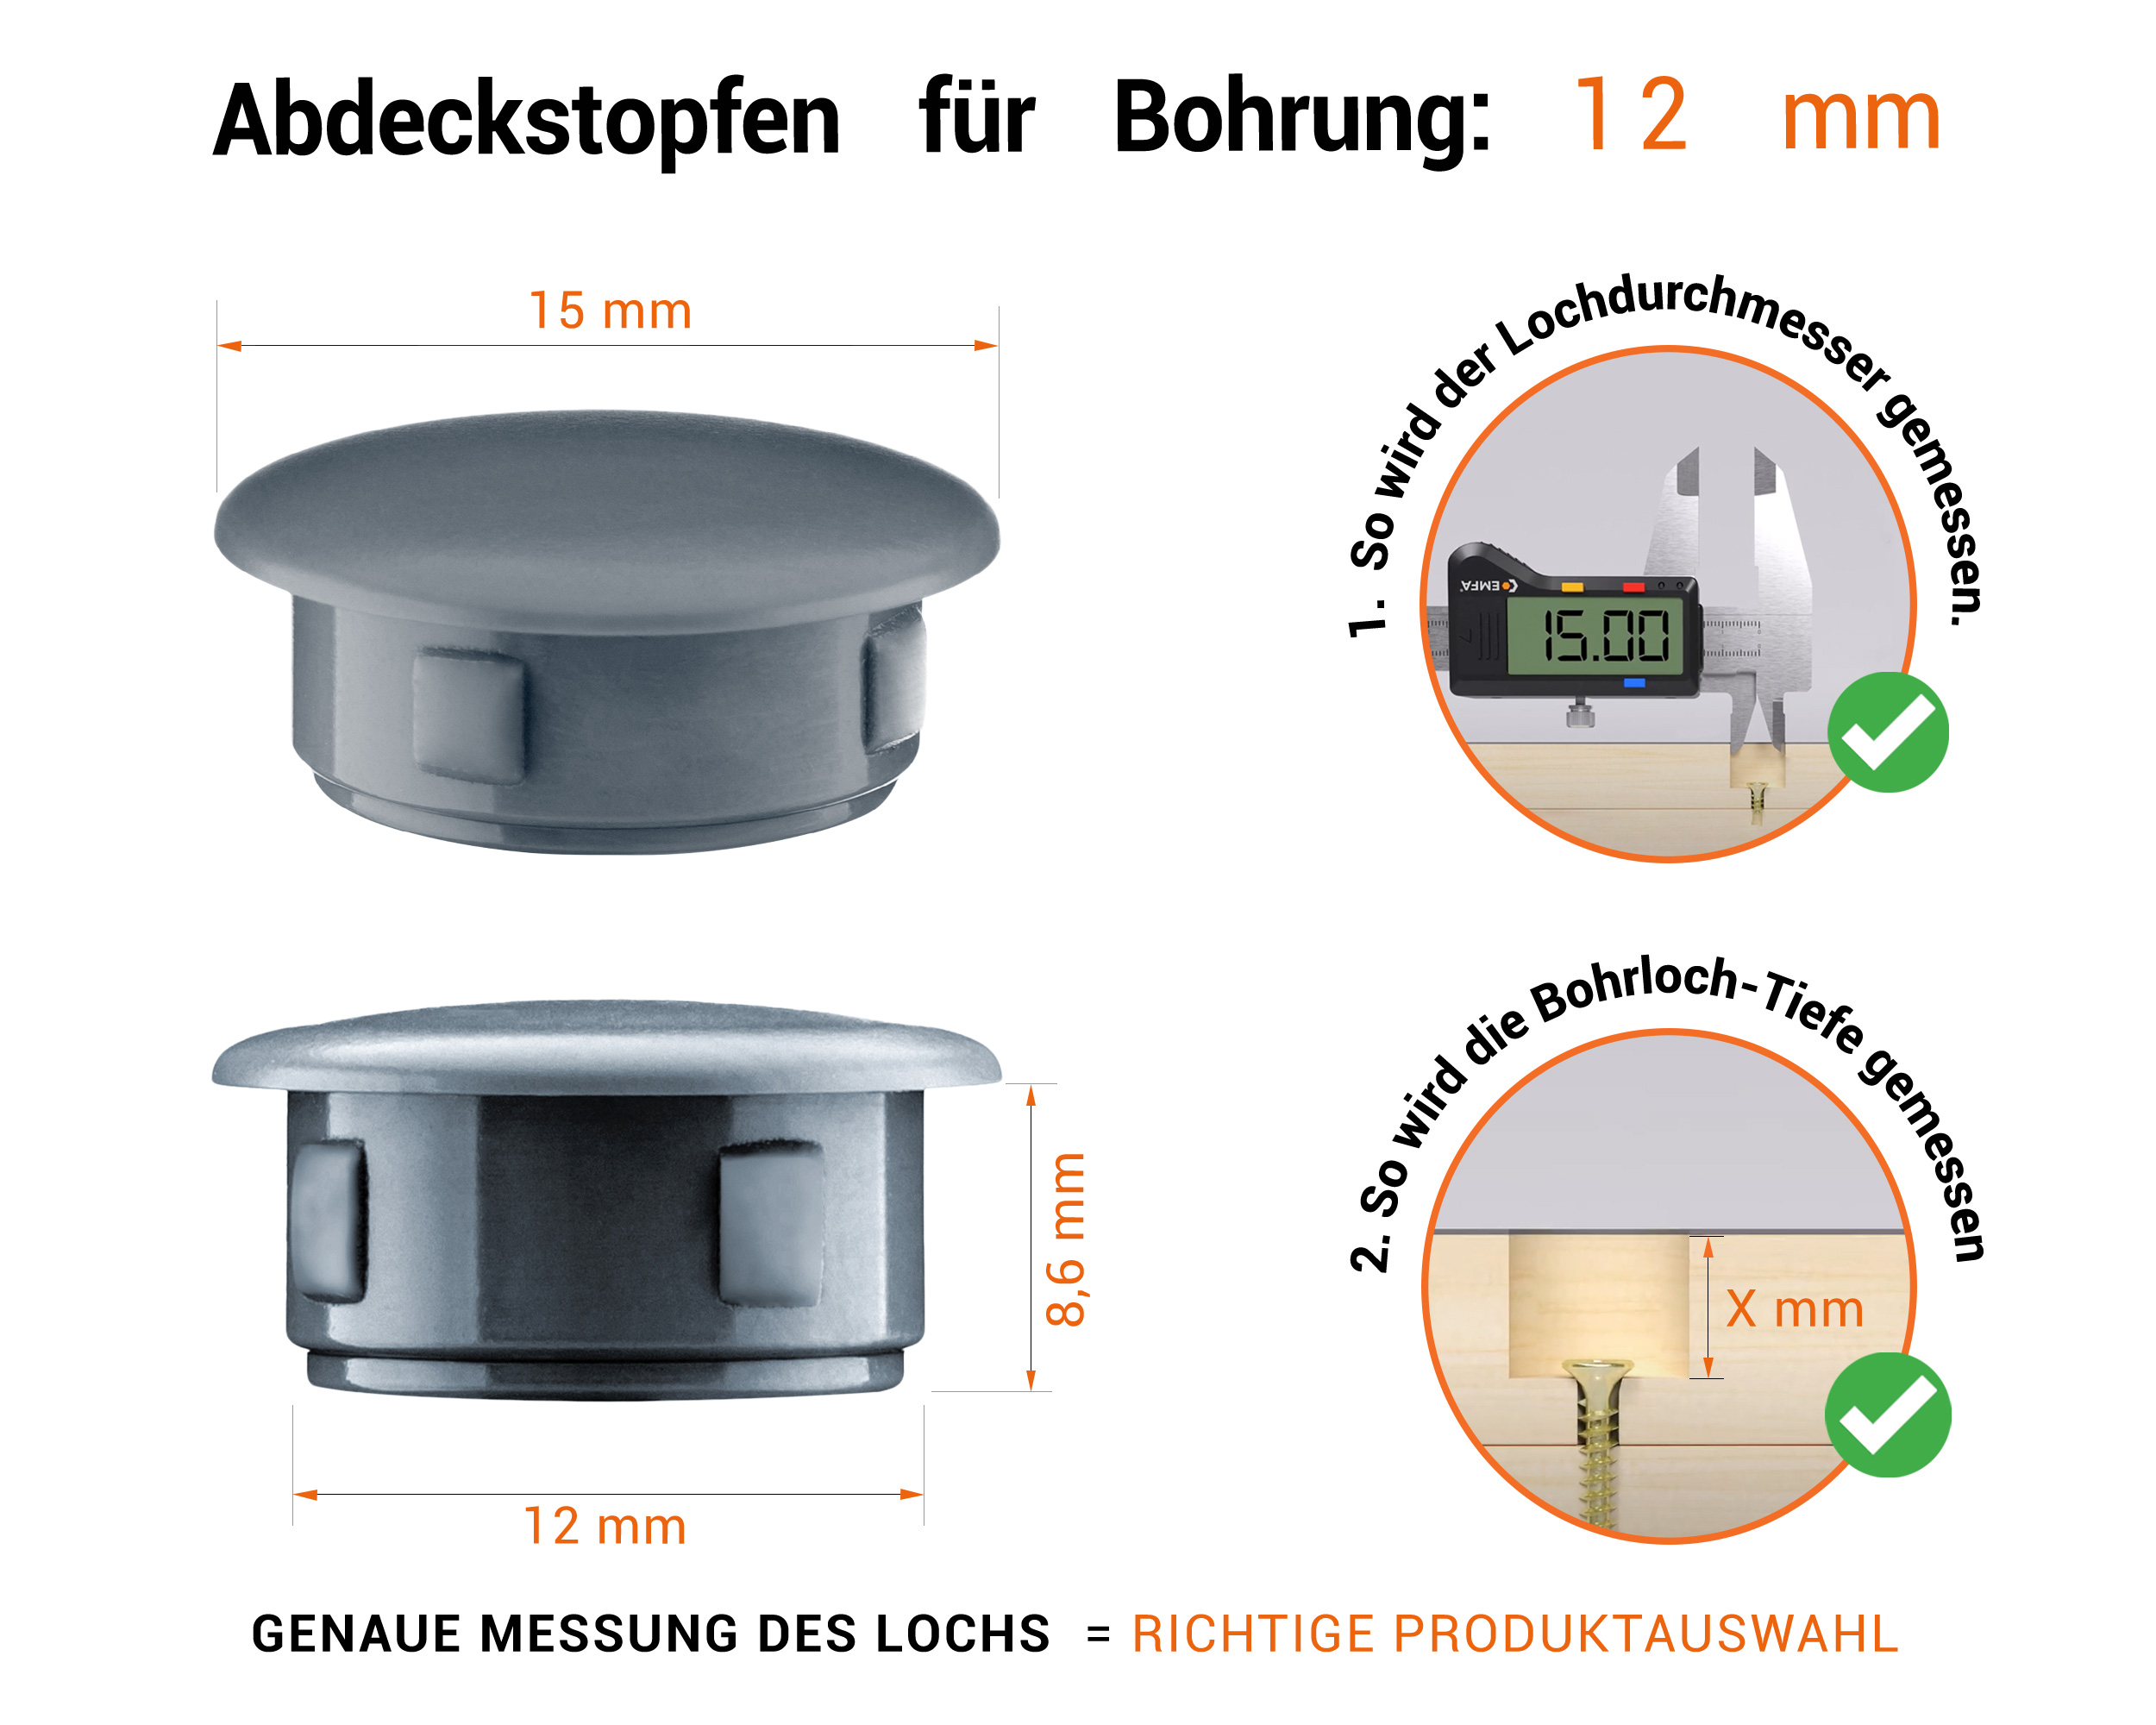 Anthrazite Blindstopfen aus Kunststoff für Bohrung 12 mmmm mit technischen Abmessungen und Anleitung für korrekte Messung